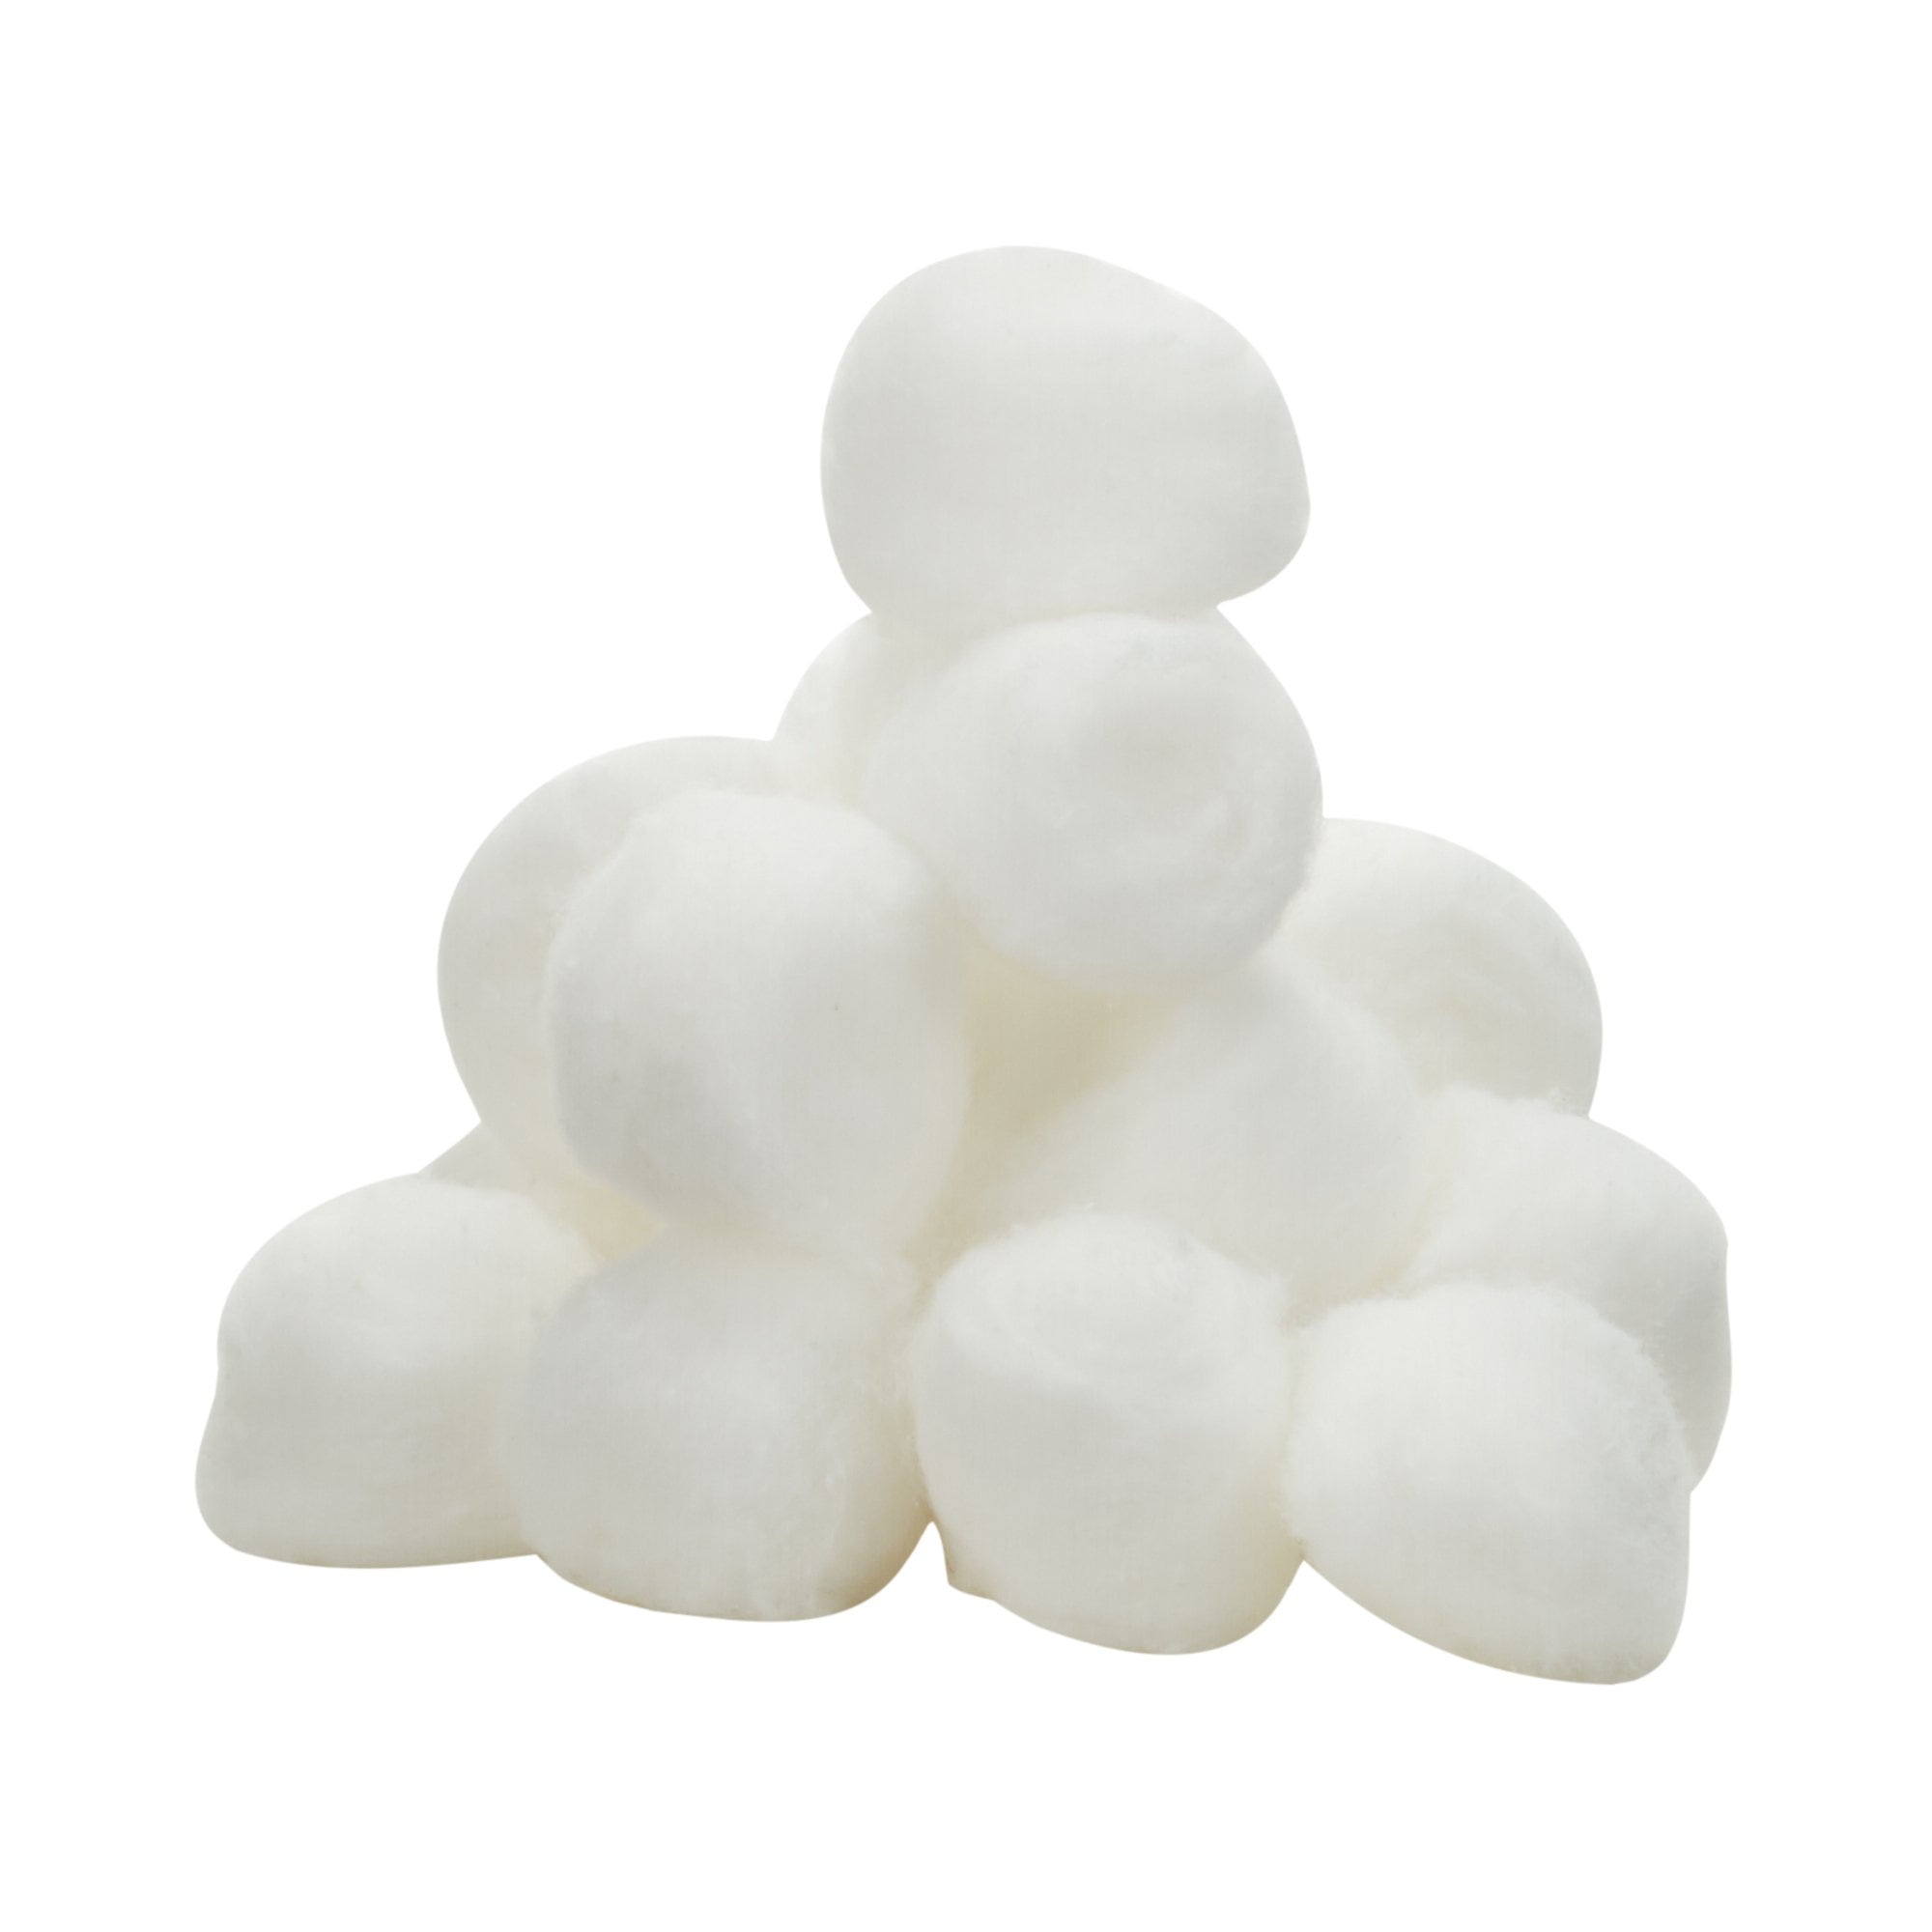 Flystuff 51-101 Cotton Balls, Large, Fits Narrow Vials, 2000 Balls